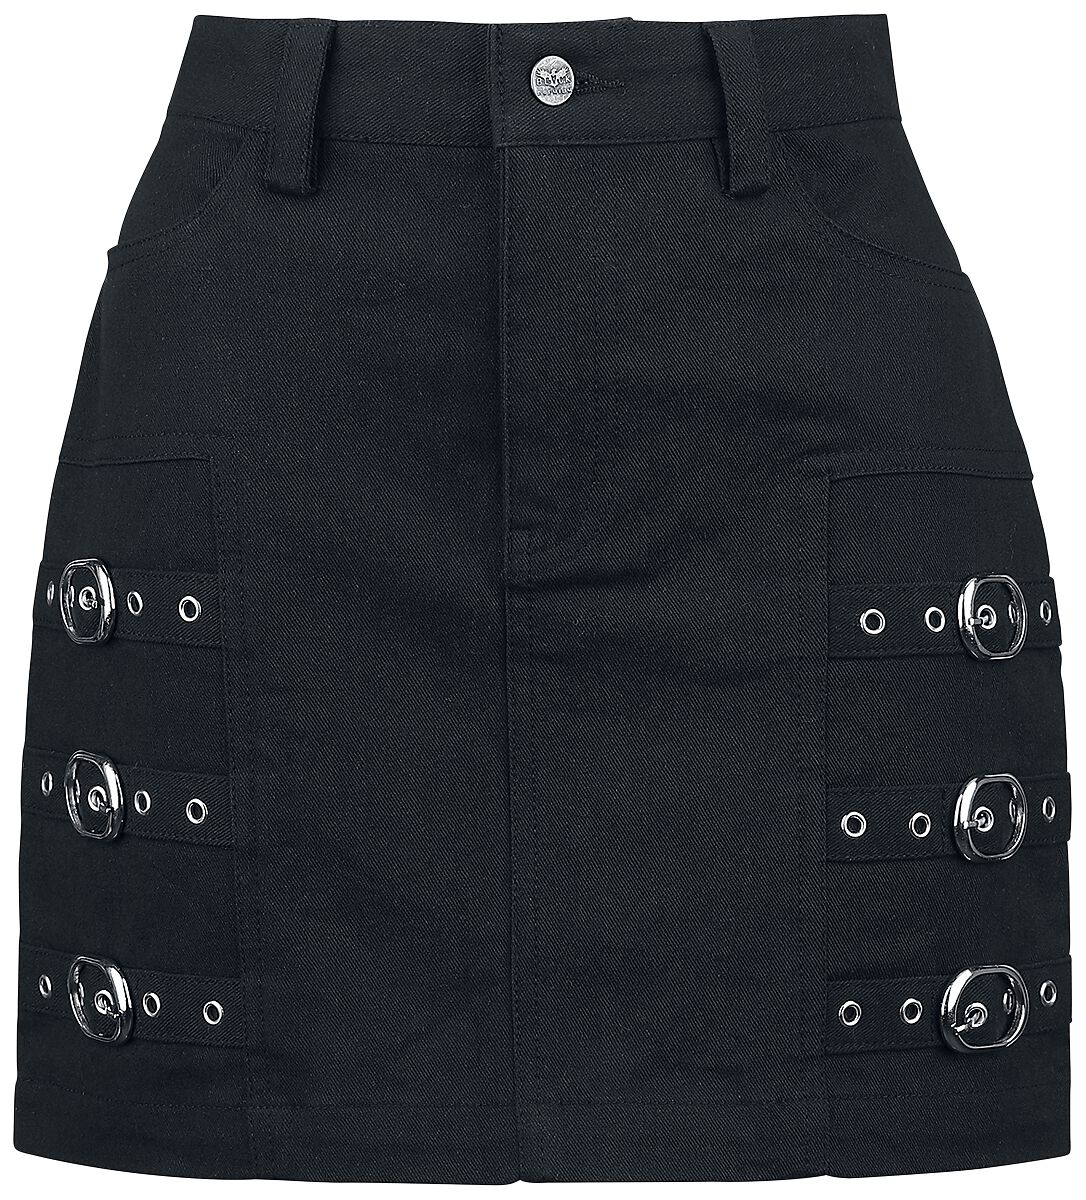 Black Premium by EMP Kurzer Rock - Short Skirt with decorative Buckles - S bis XXL - für Damen - Größe XL - schwarz